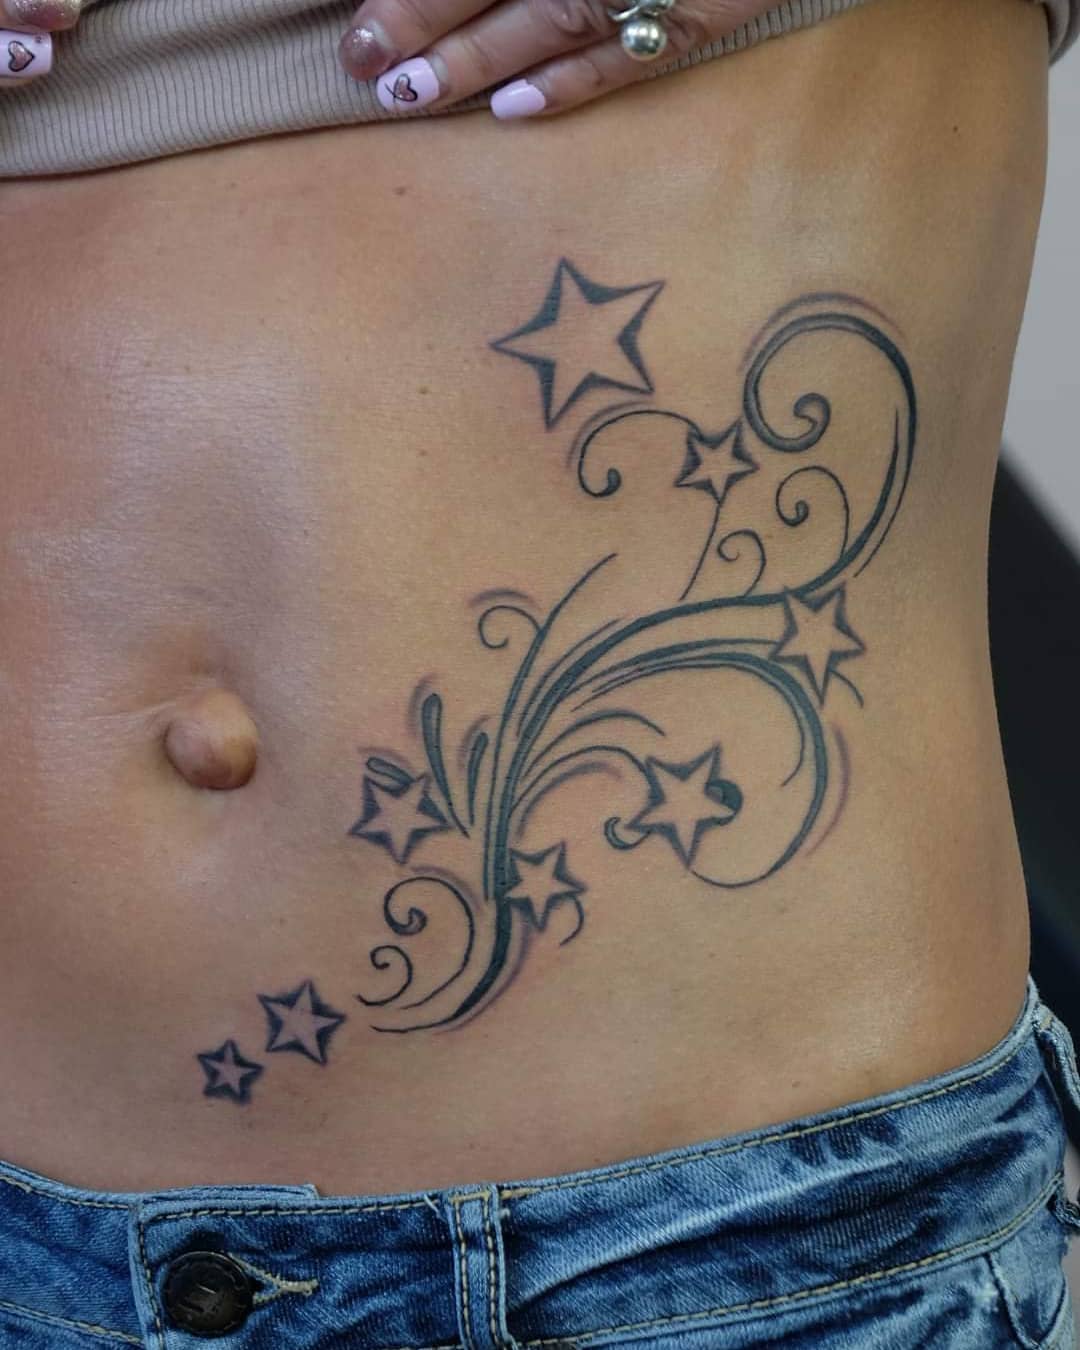 The Best Star Tattoos